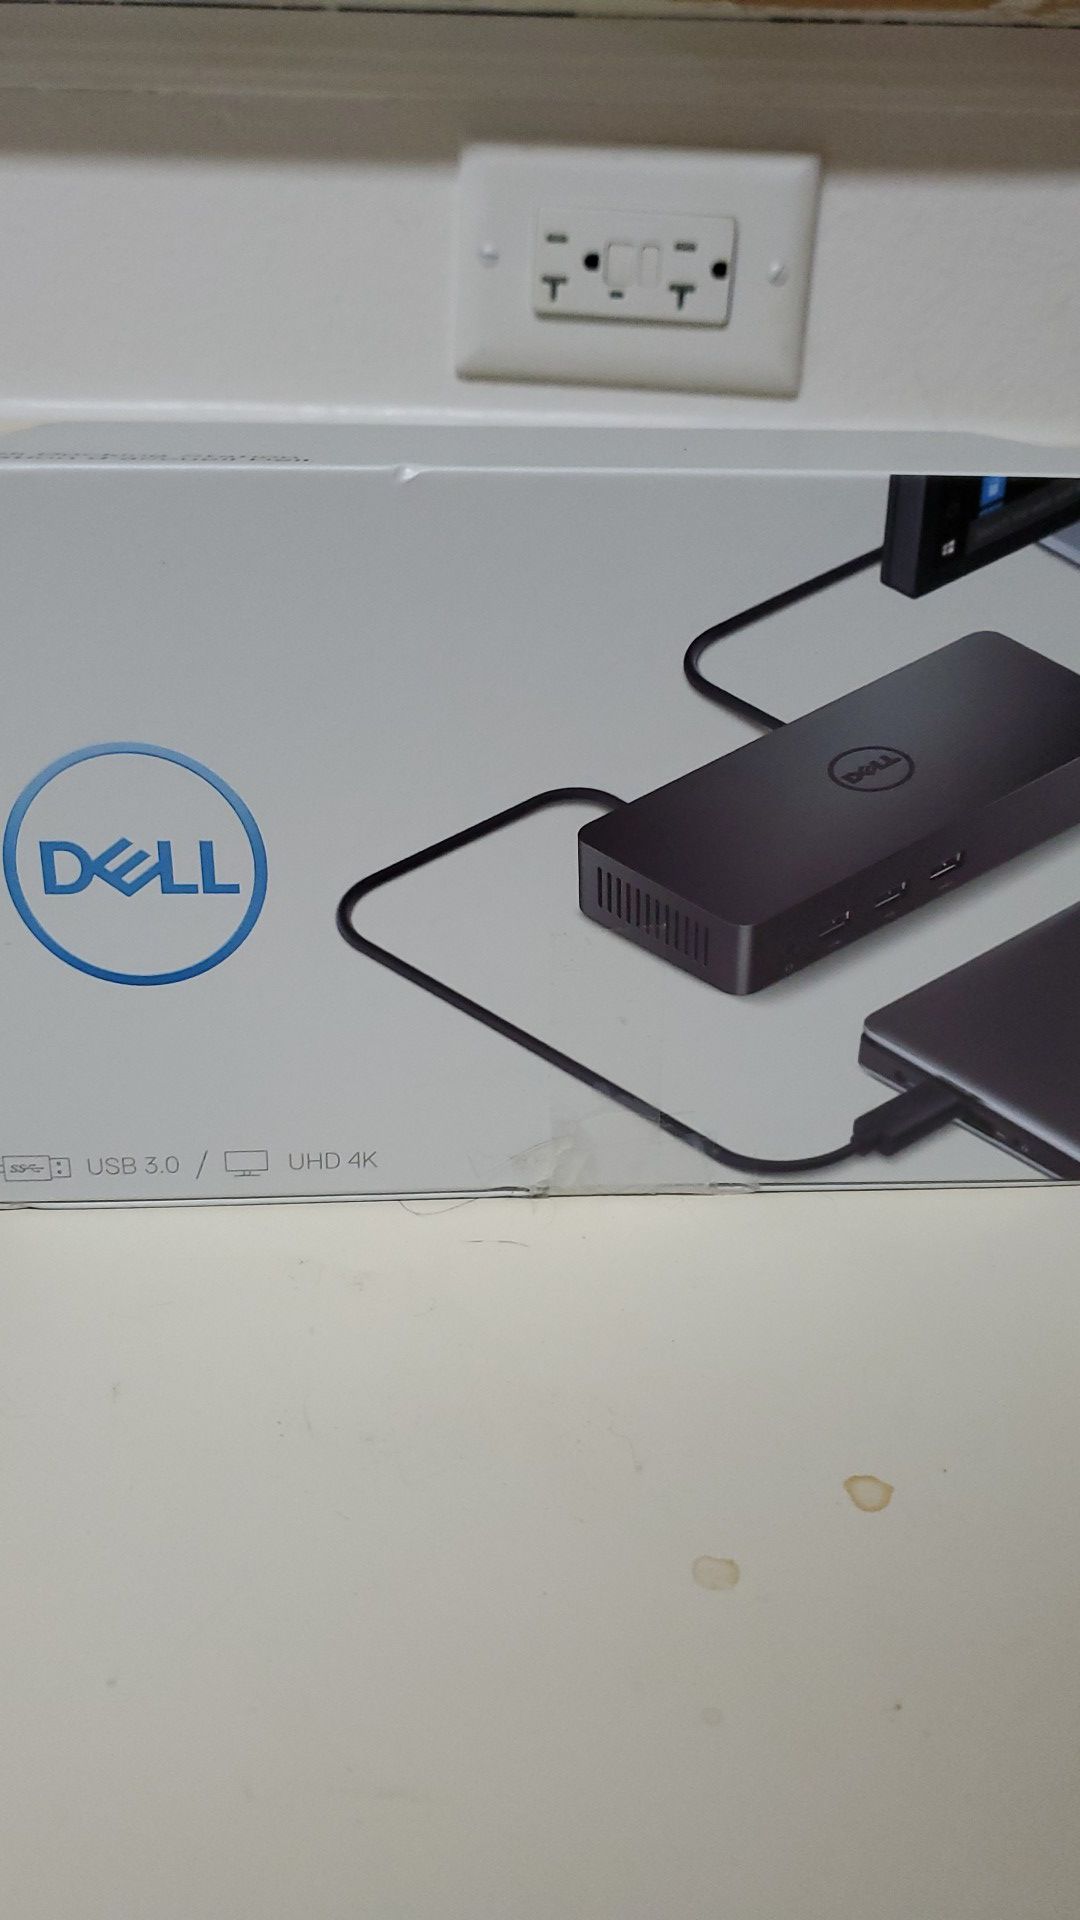 Dell docking station USB 3.0/uhd 4k